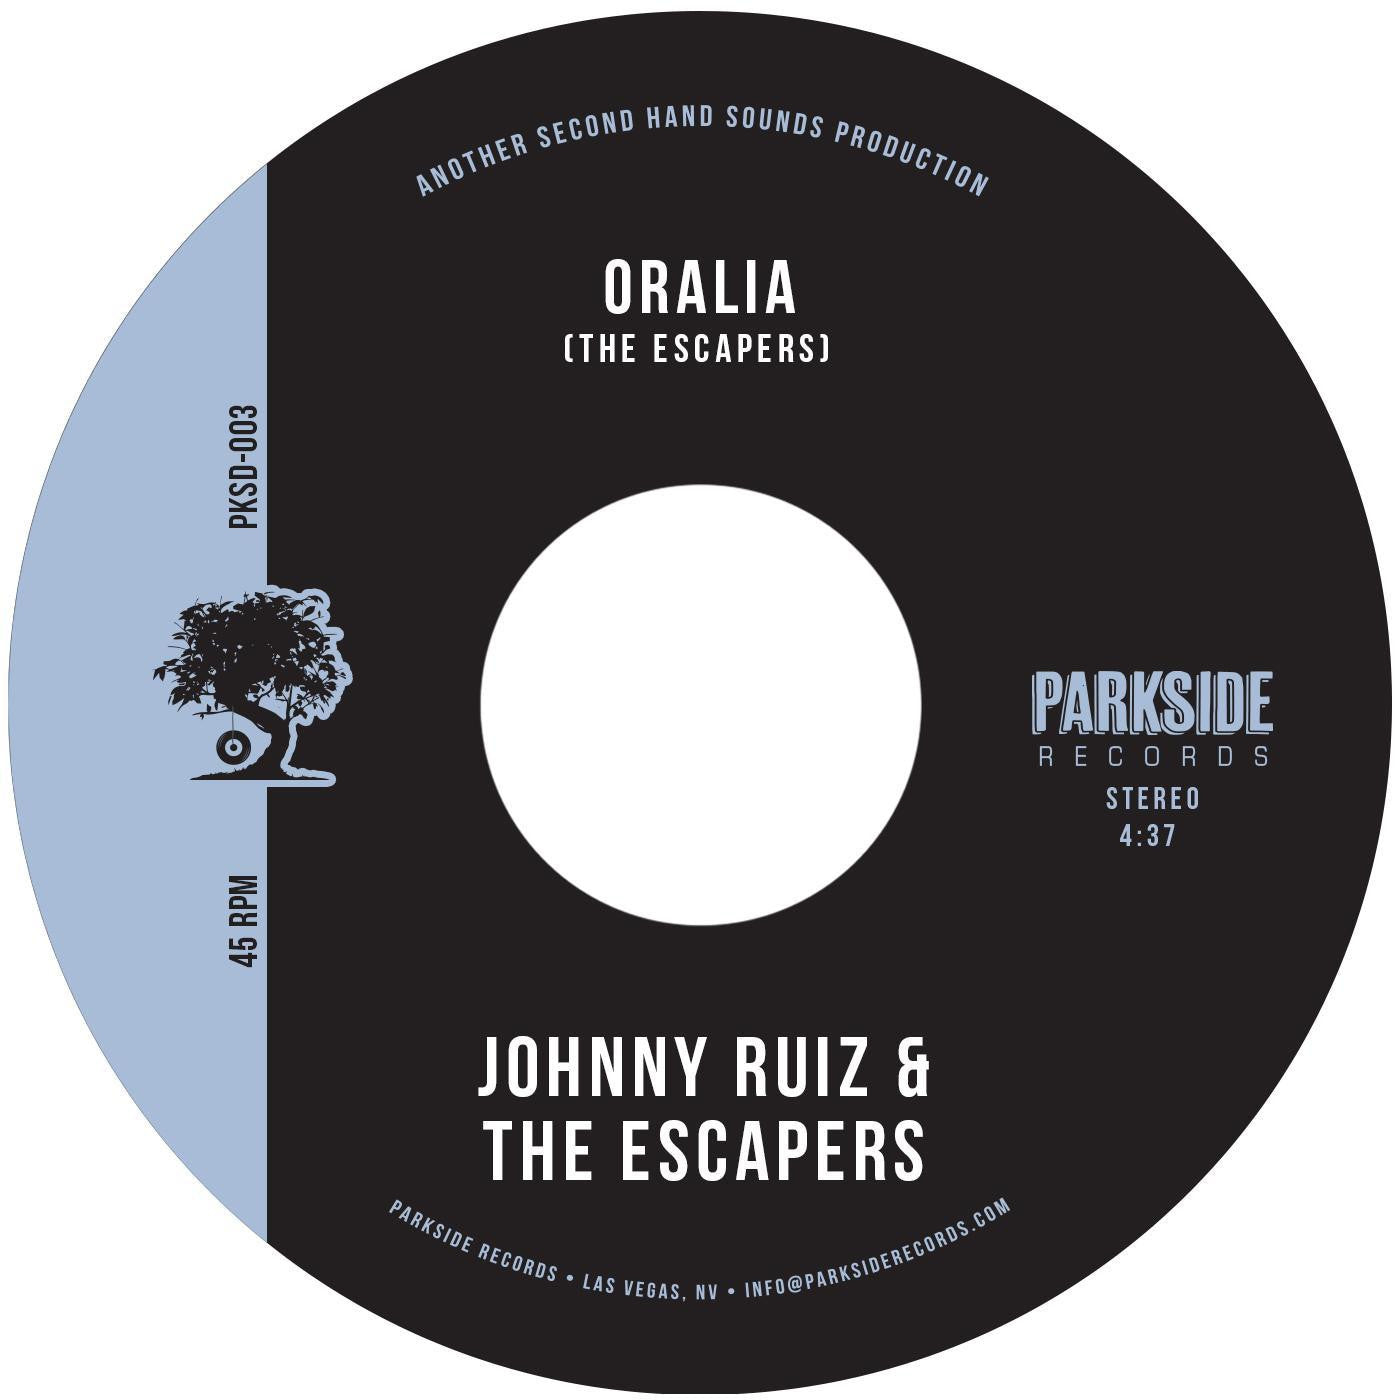 JOHNNY RUIZ & THE ESCAPERS - ORALIA Vinyl 7"